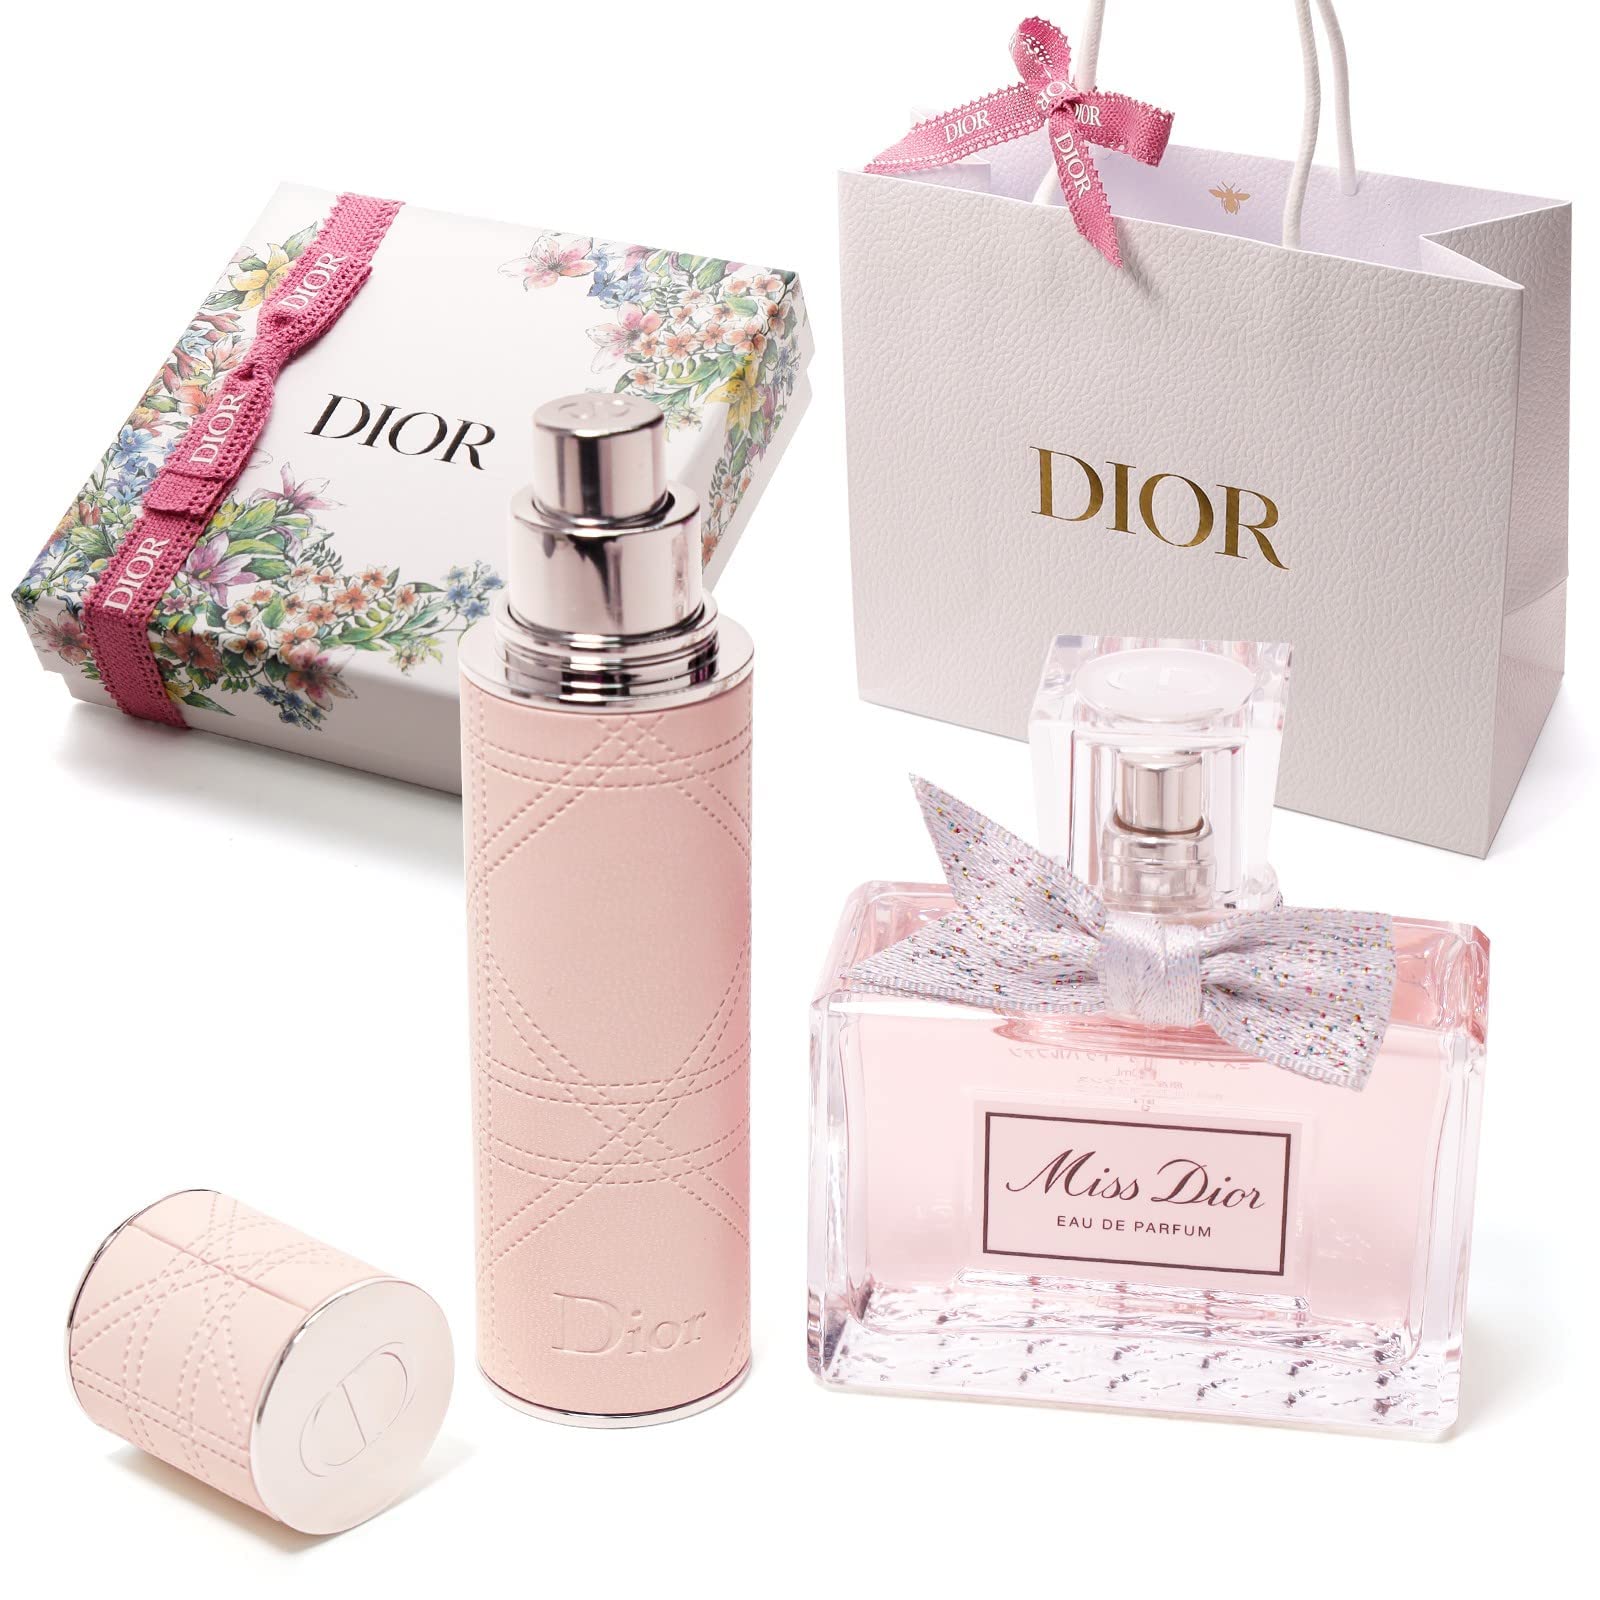 Dior 3Pc Miss Dior Blooming Bouquet Eau de Toilette Gift Set  Macys